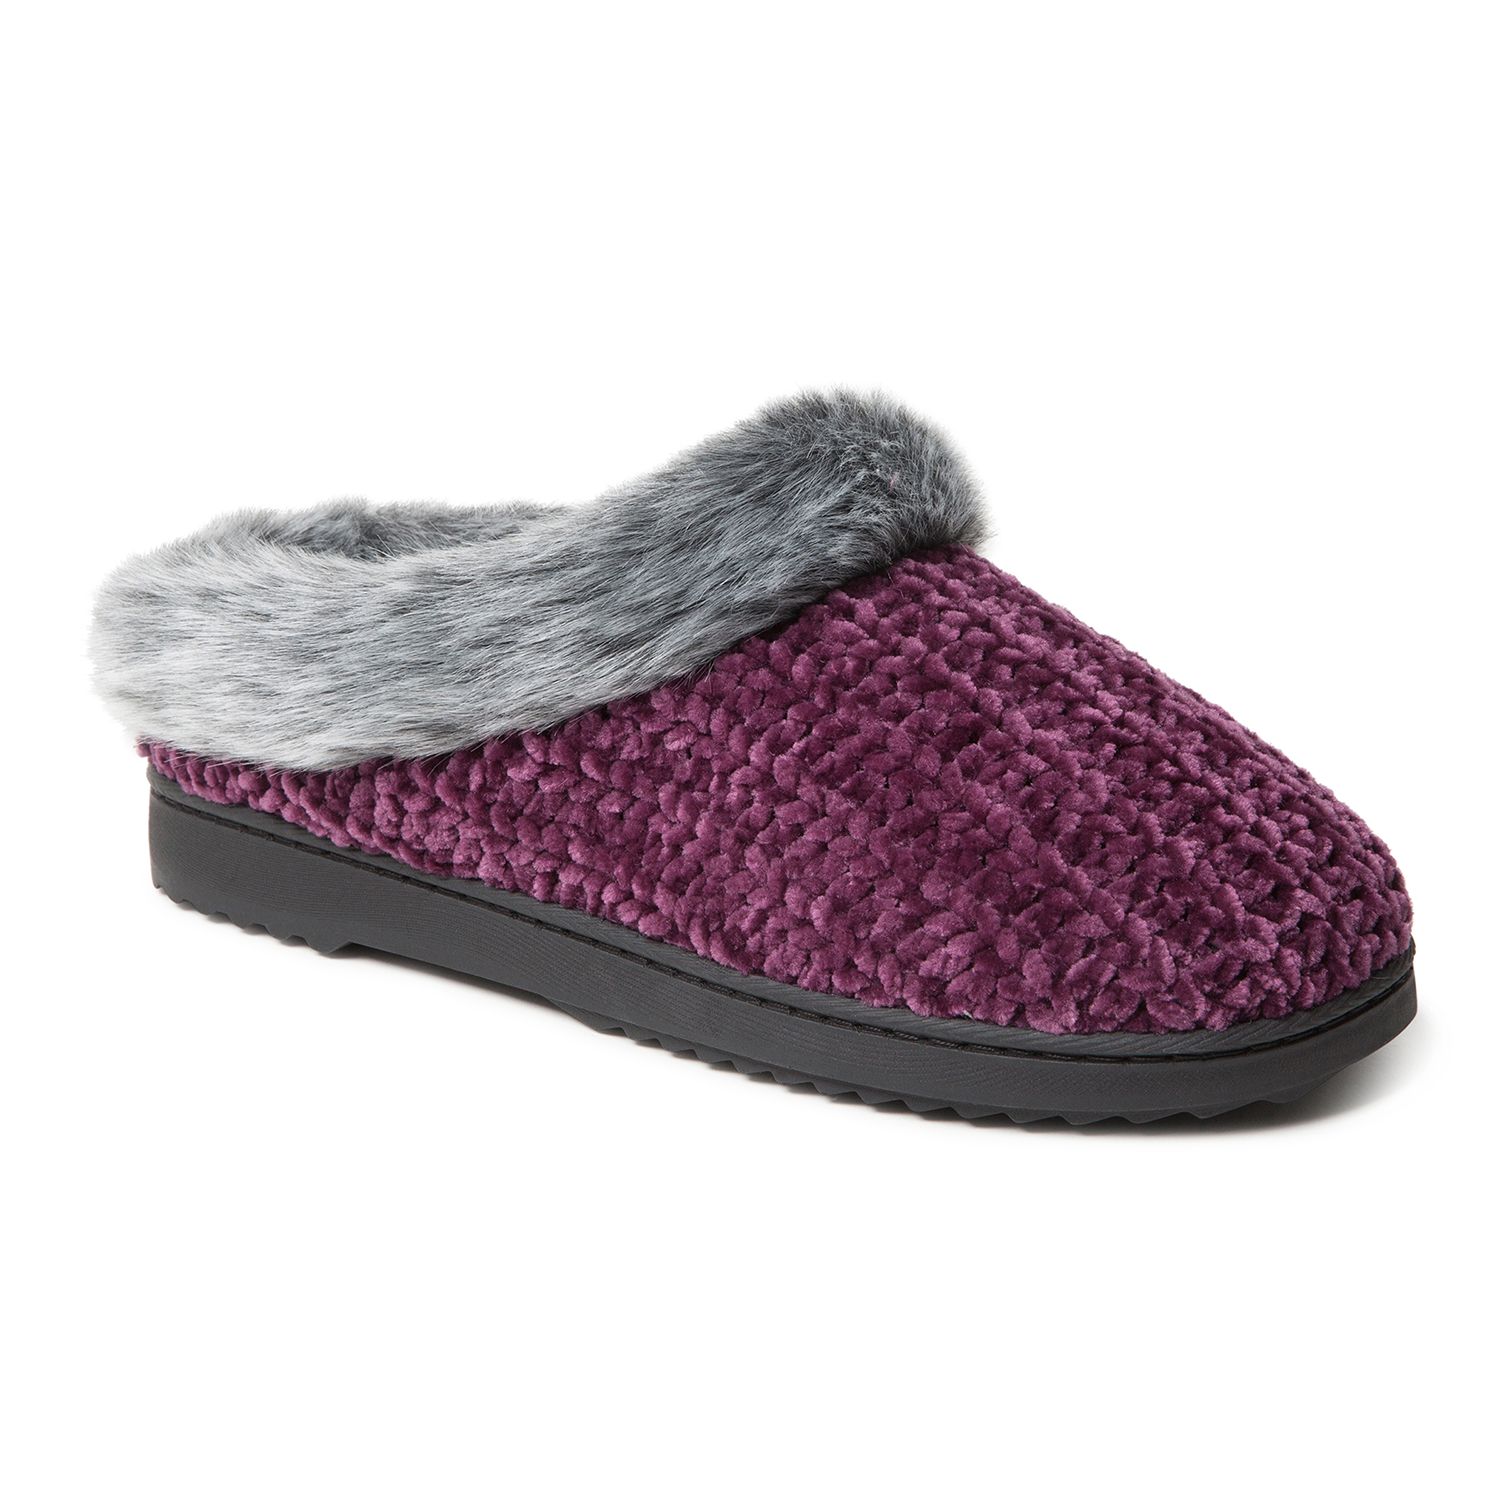 dearfoam womens slippers sale